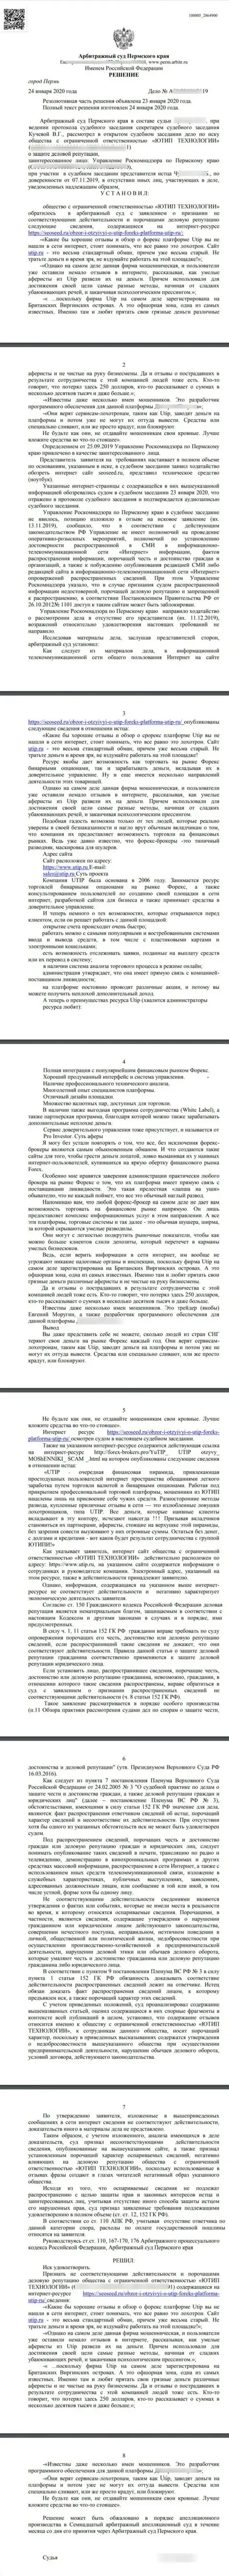 Исковое заявление жуликов UTIP в адрес сайта SeoSeed Ru, который был удовлетворен самым гуманным судом